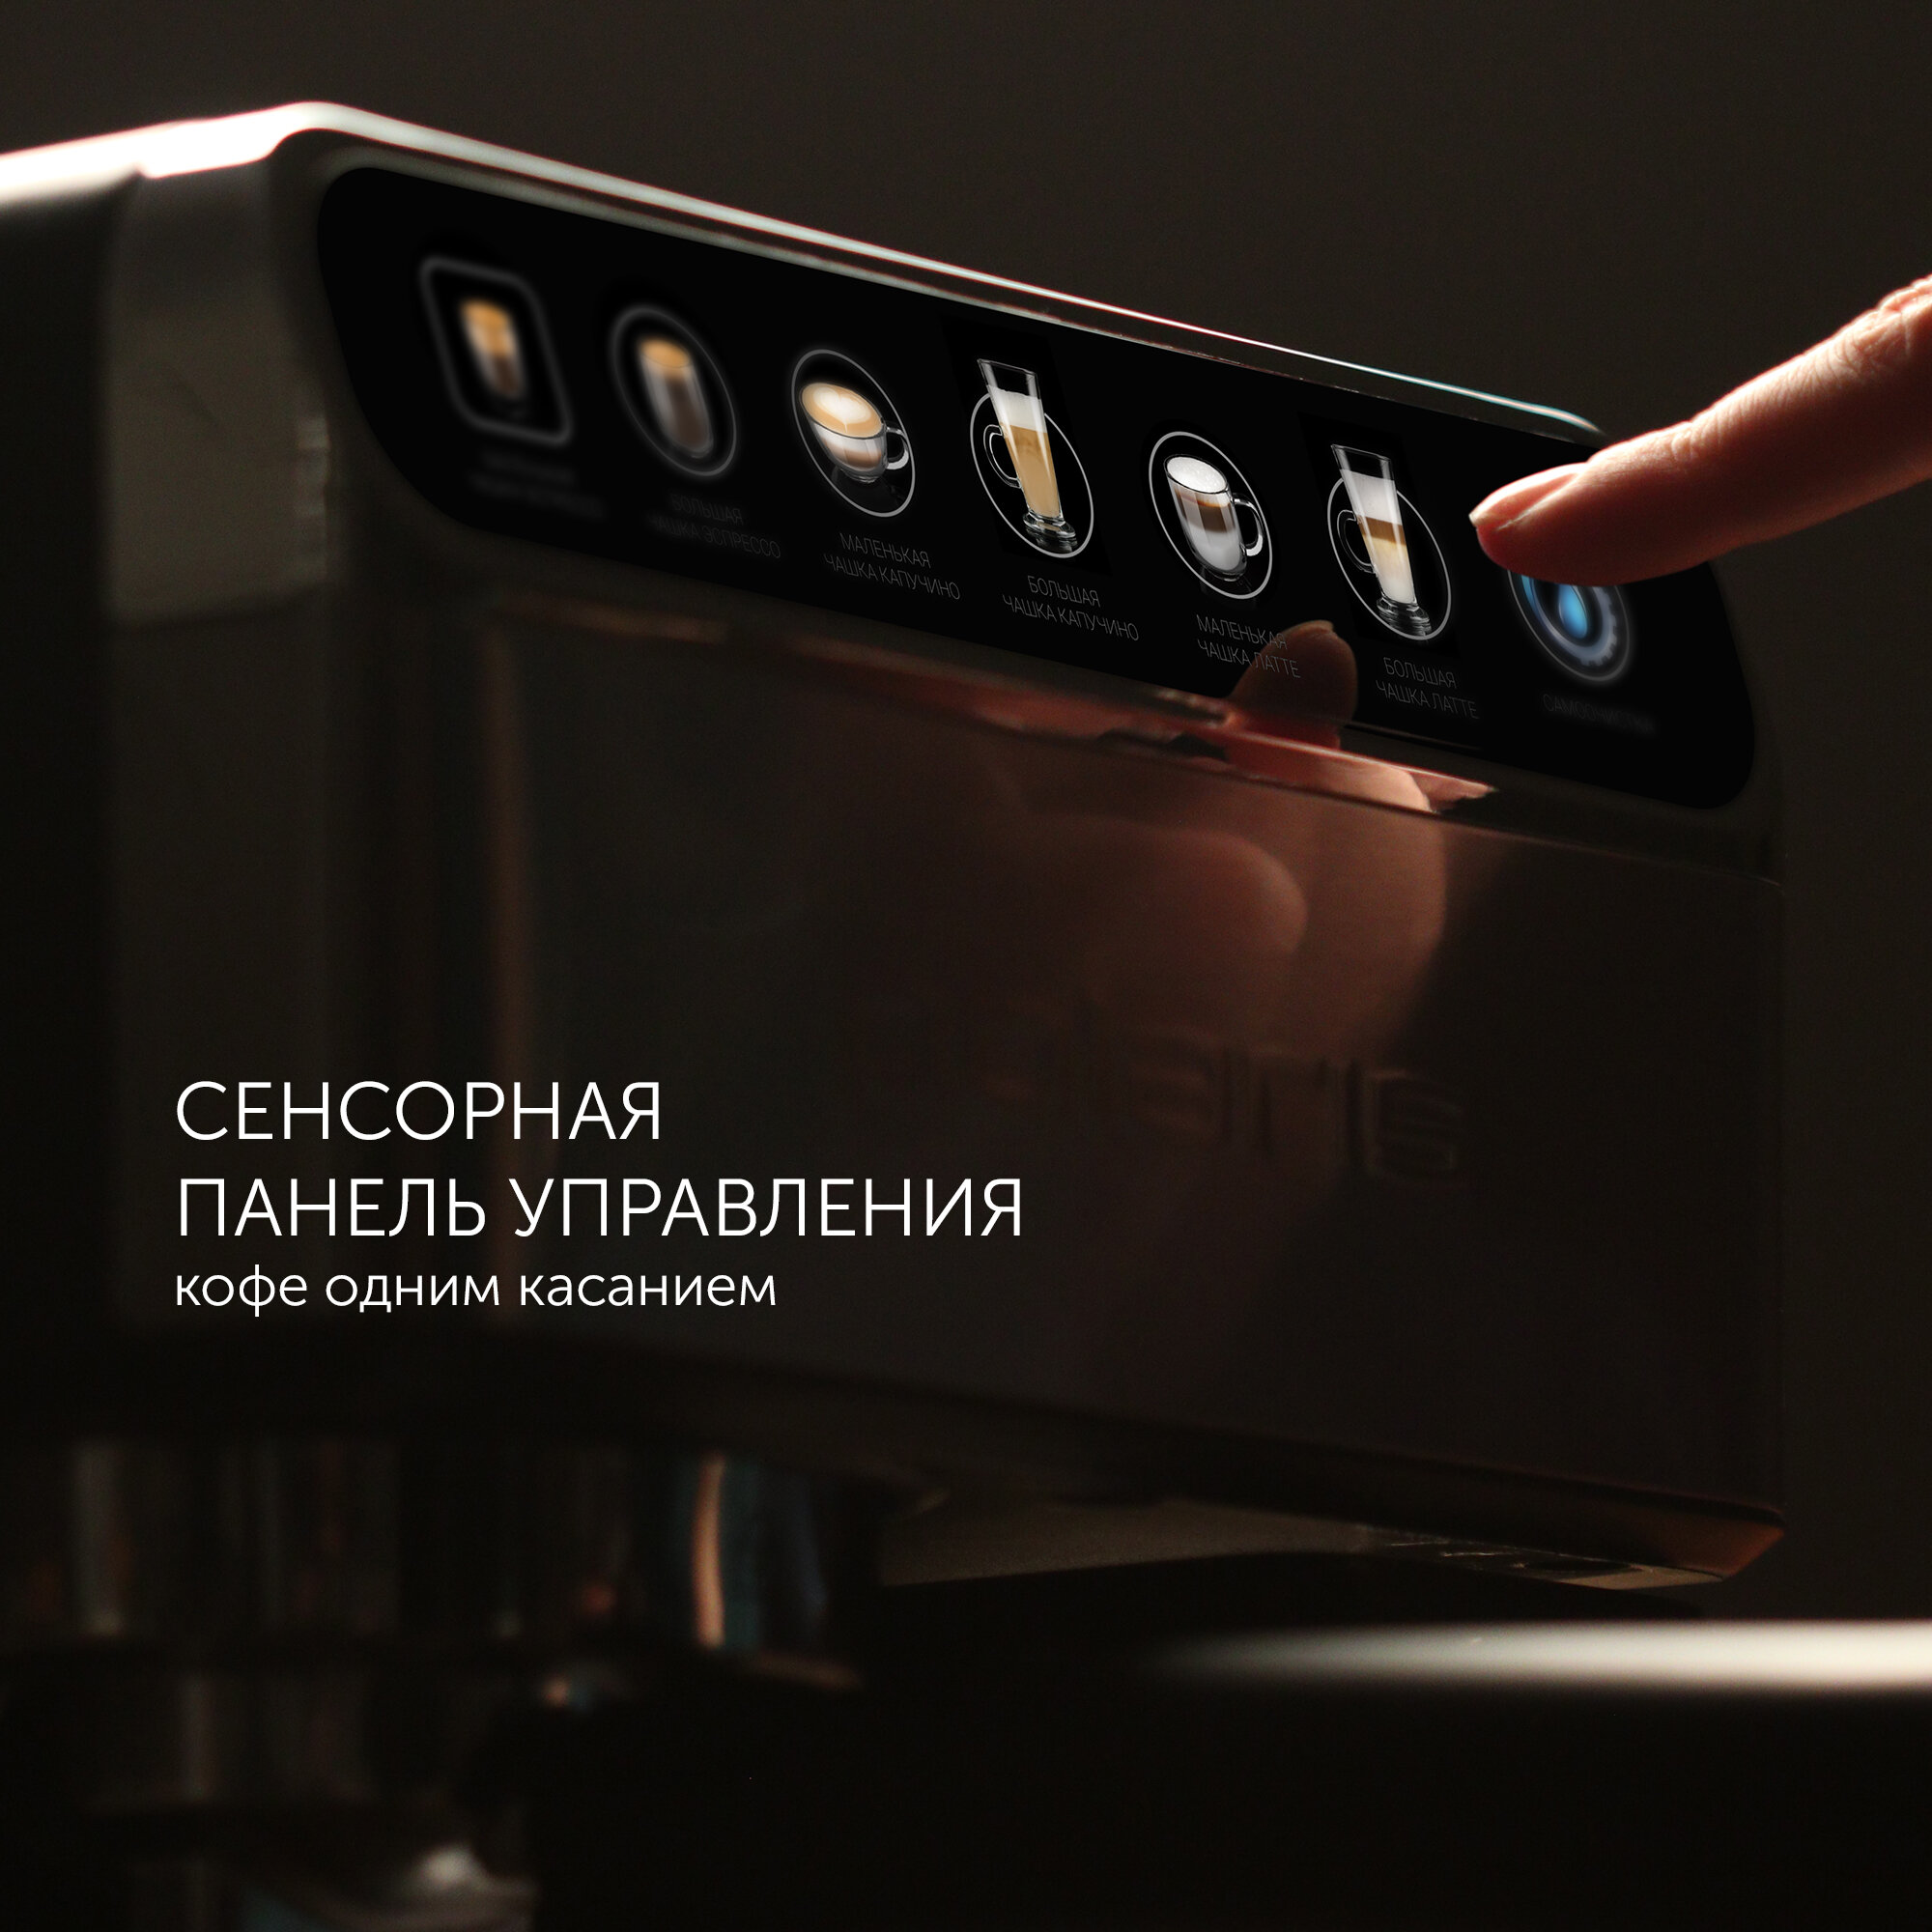 кофеварка POLARIS PCM1540 3-в-1 IQ Home 1400Вт автокапучино - фото №8